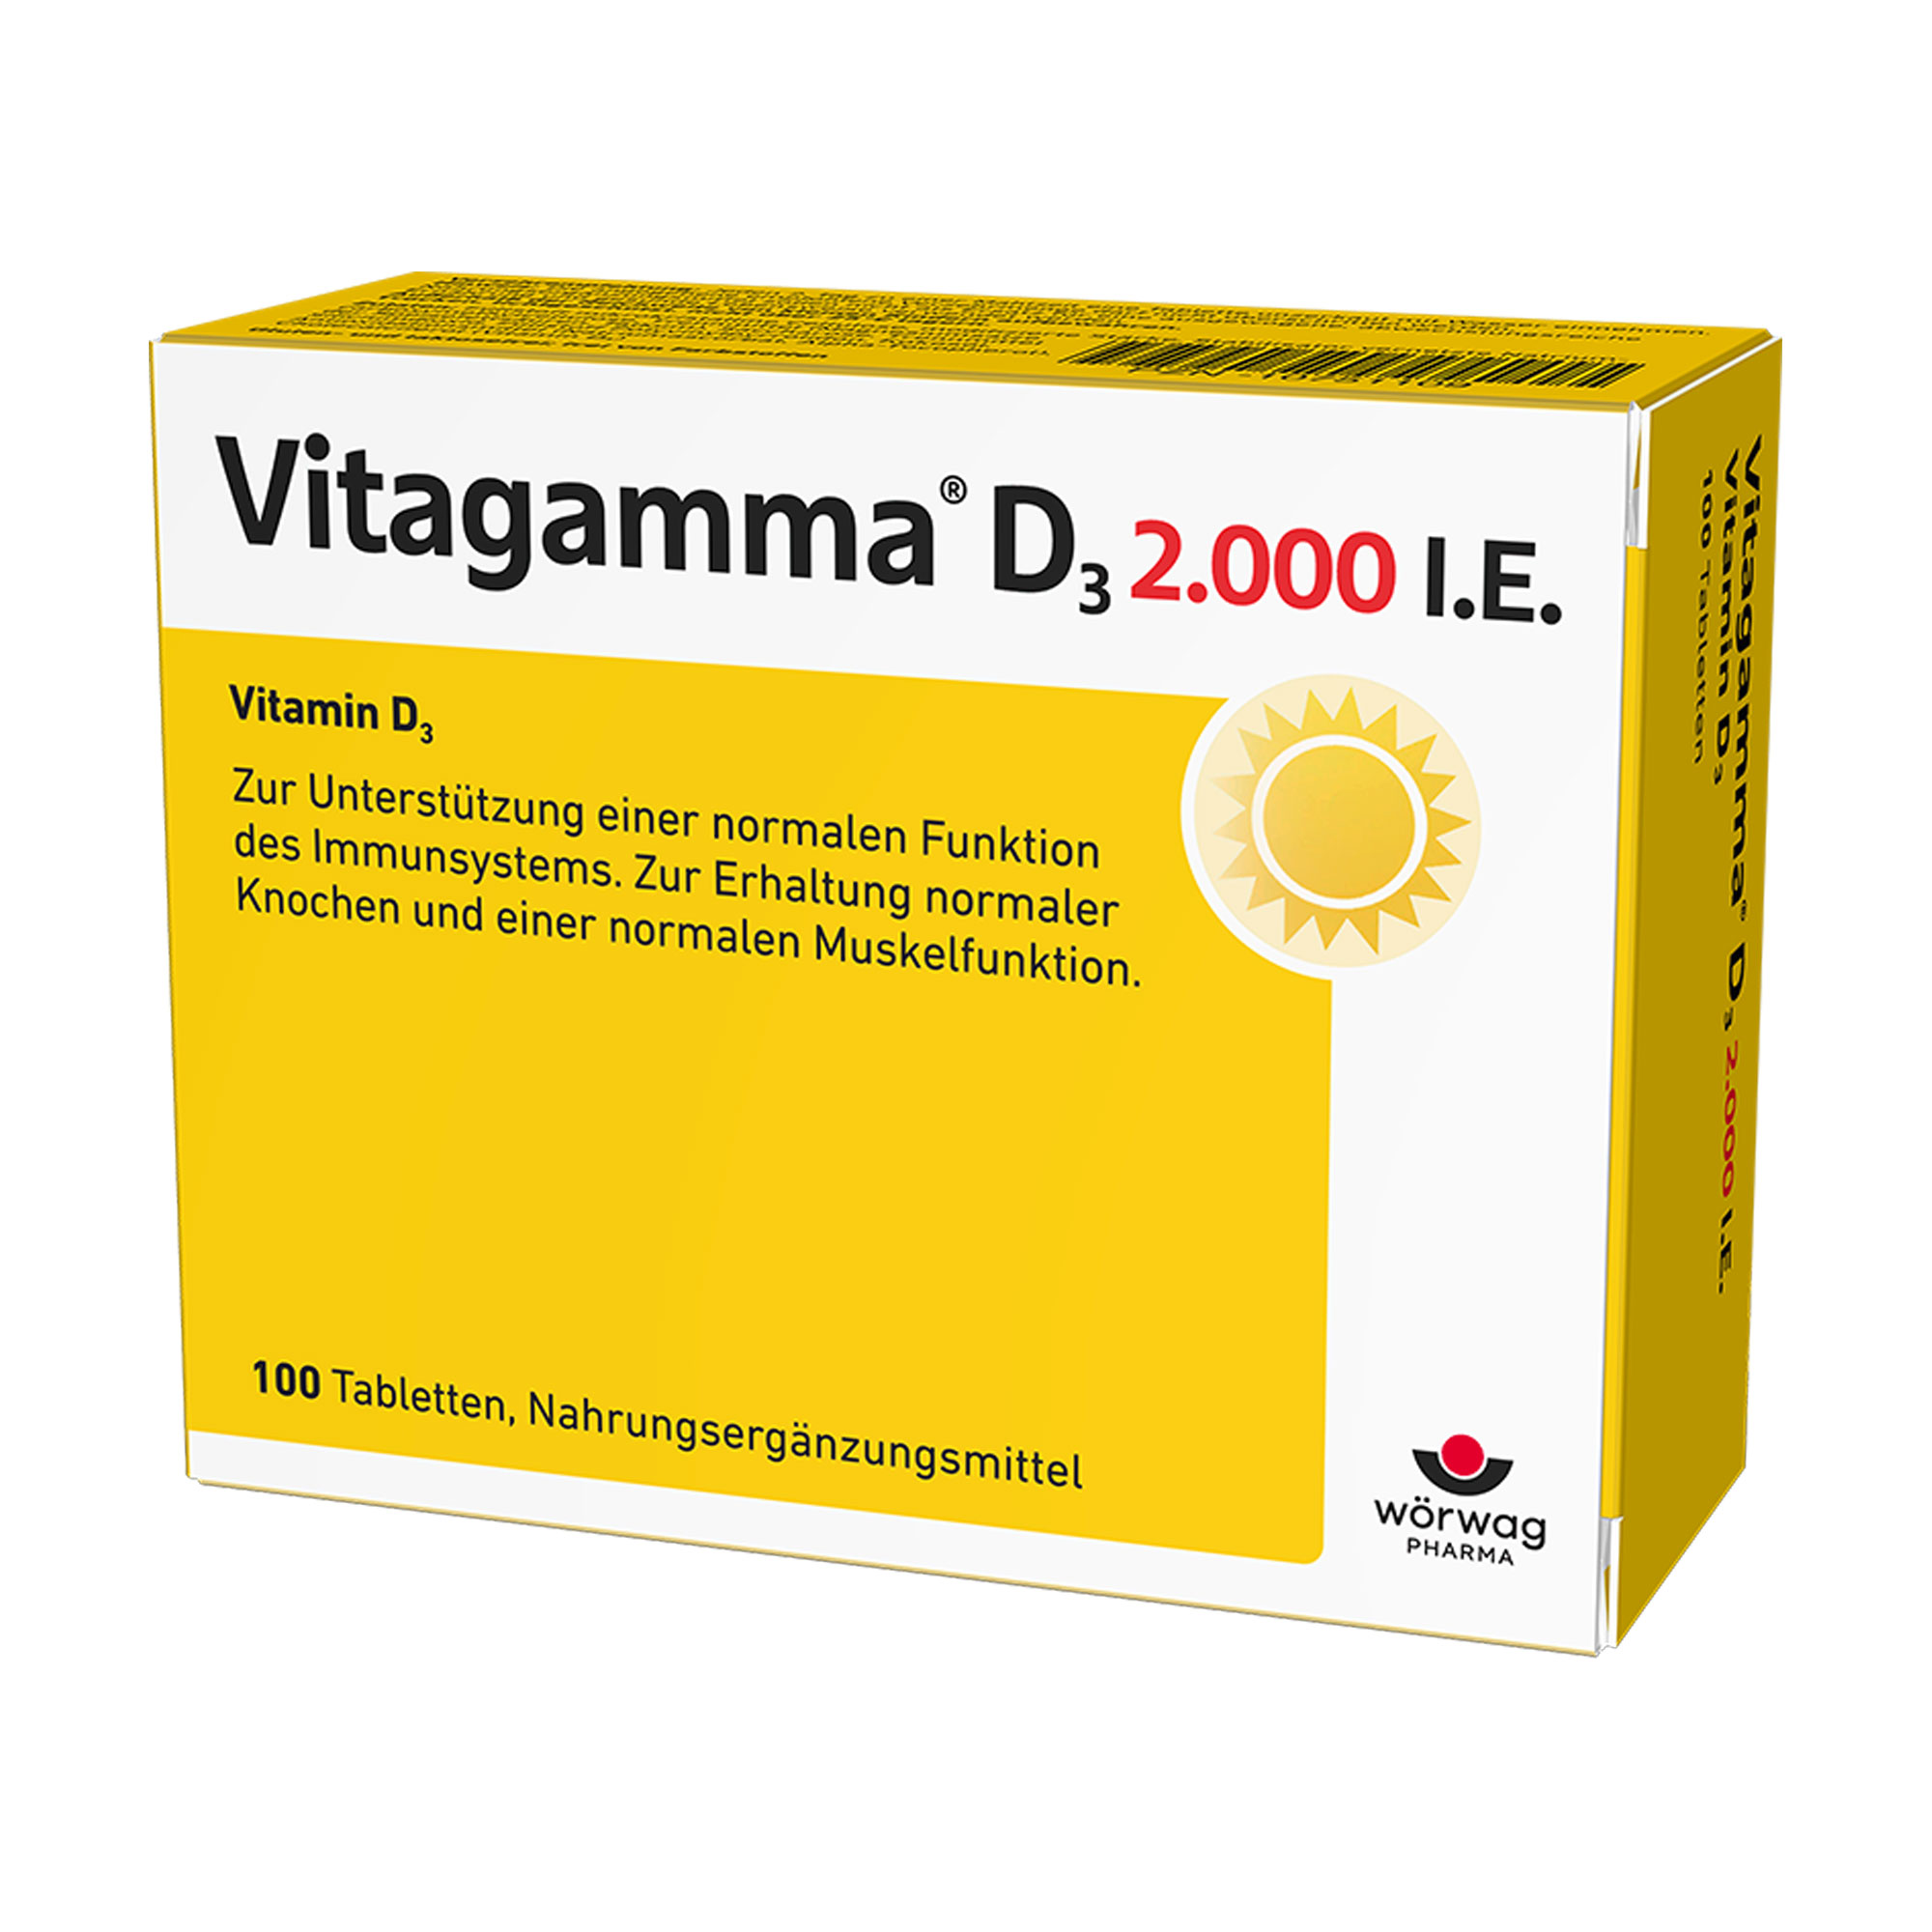 Nahrungsergänzungsmittel. Vitaminpräparat bestehend aus 2.000 internationalen Einheiten Vitamin D3.